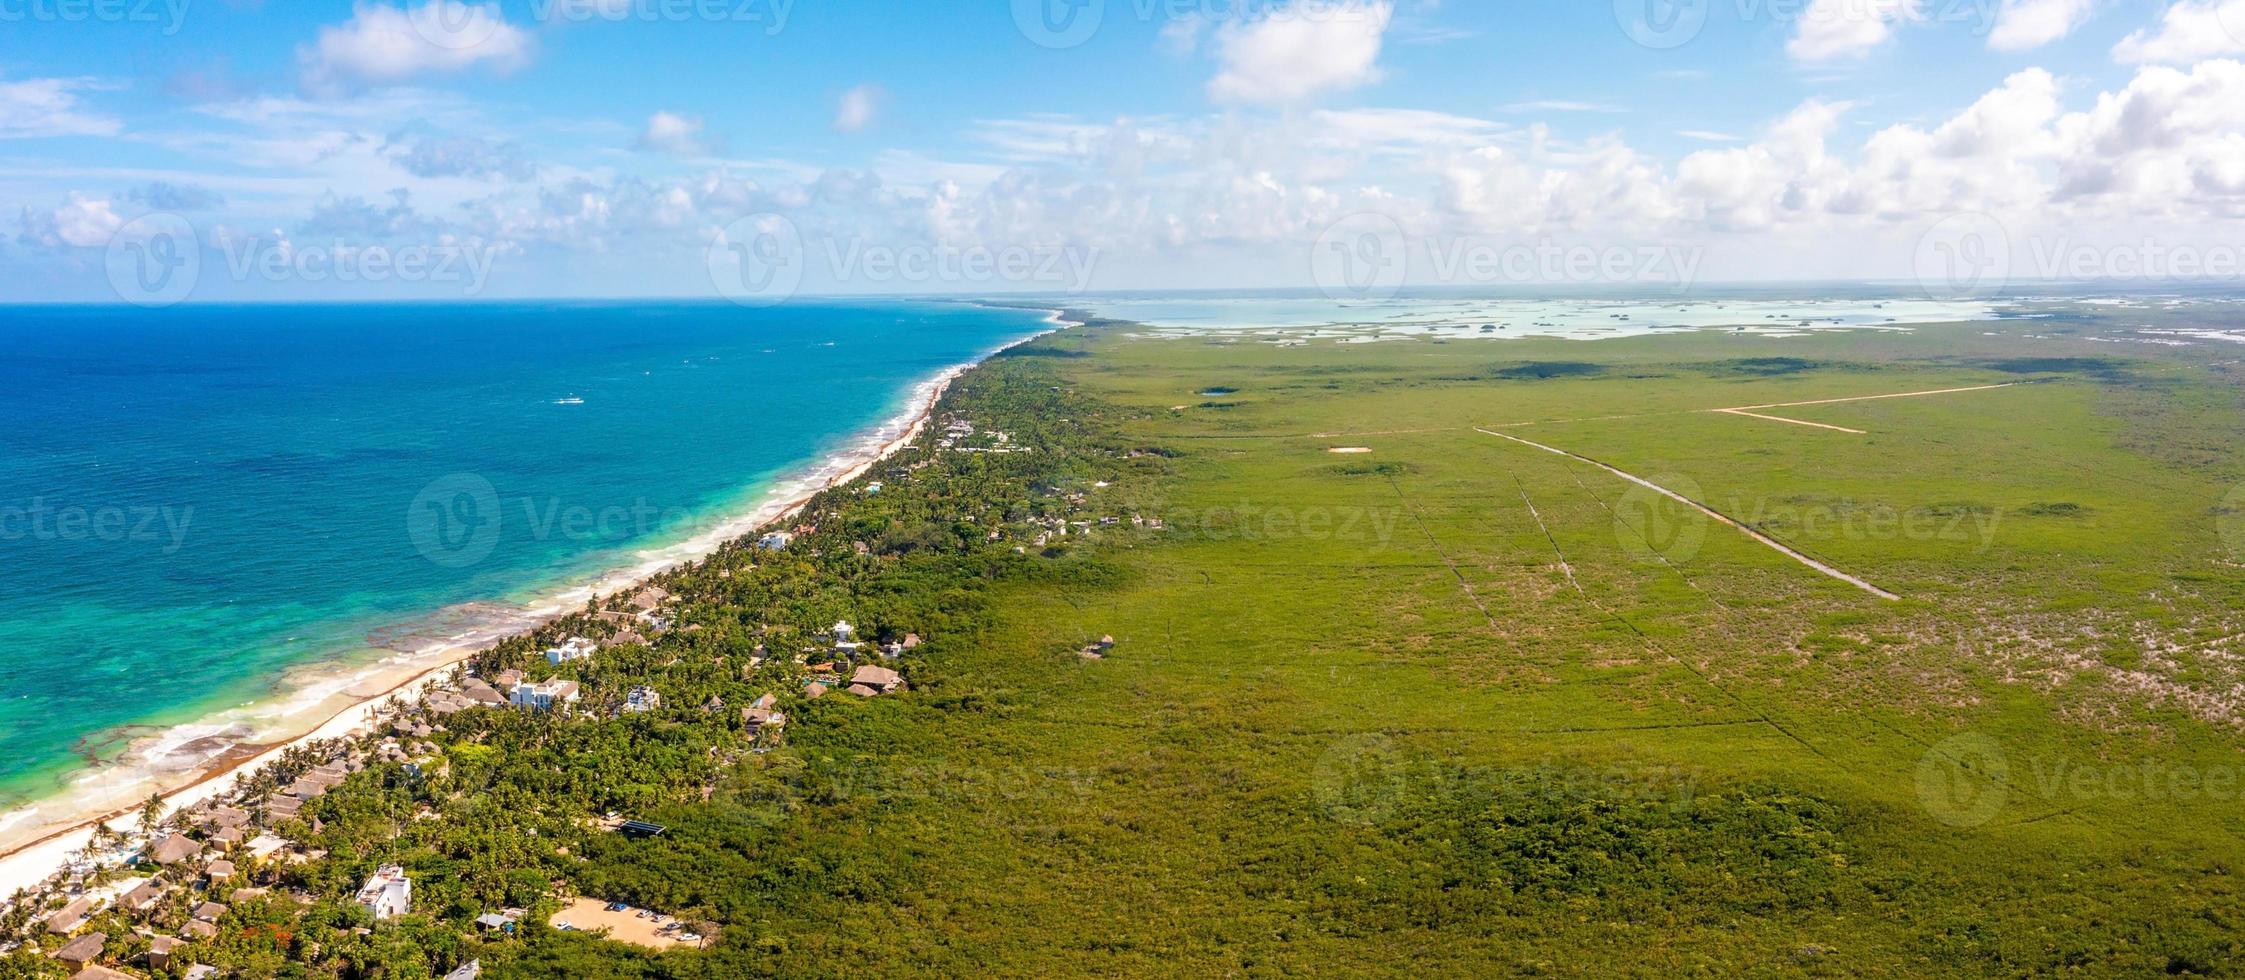 luchtfoto tulum kustlijn aan het strand met een magische Caribische zee en kleine hutten aan de kust. foto